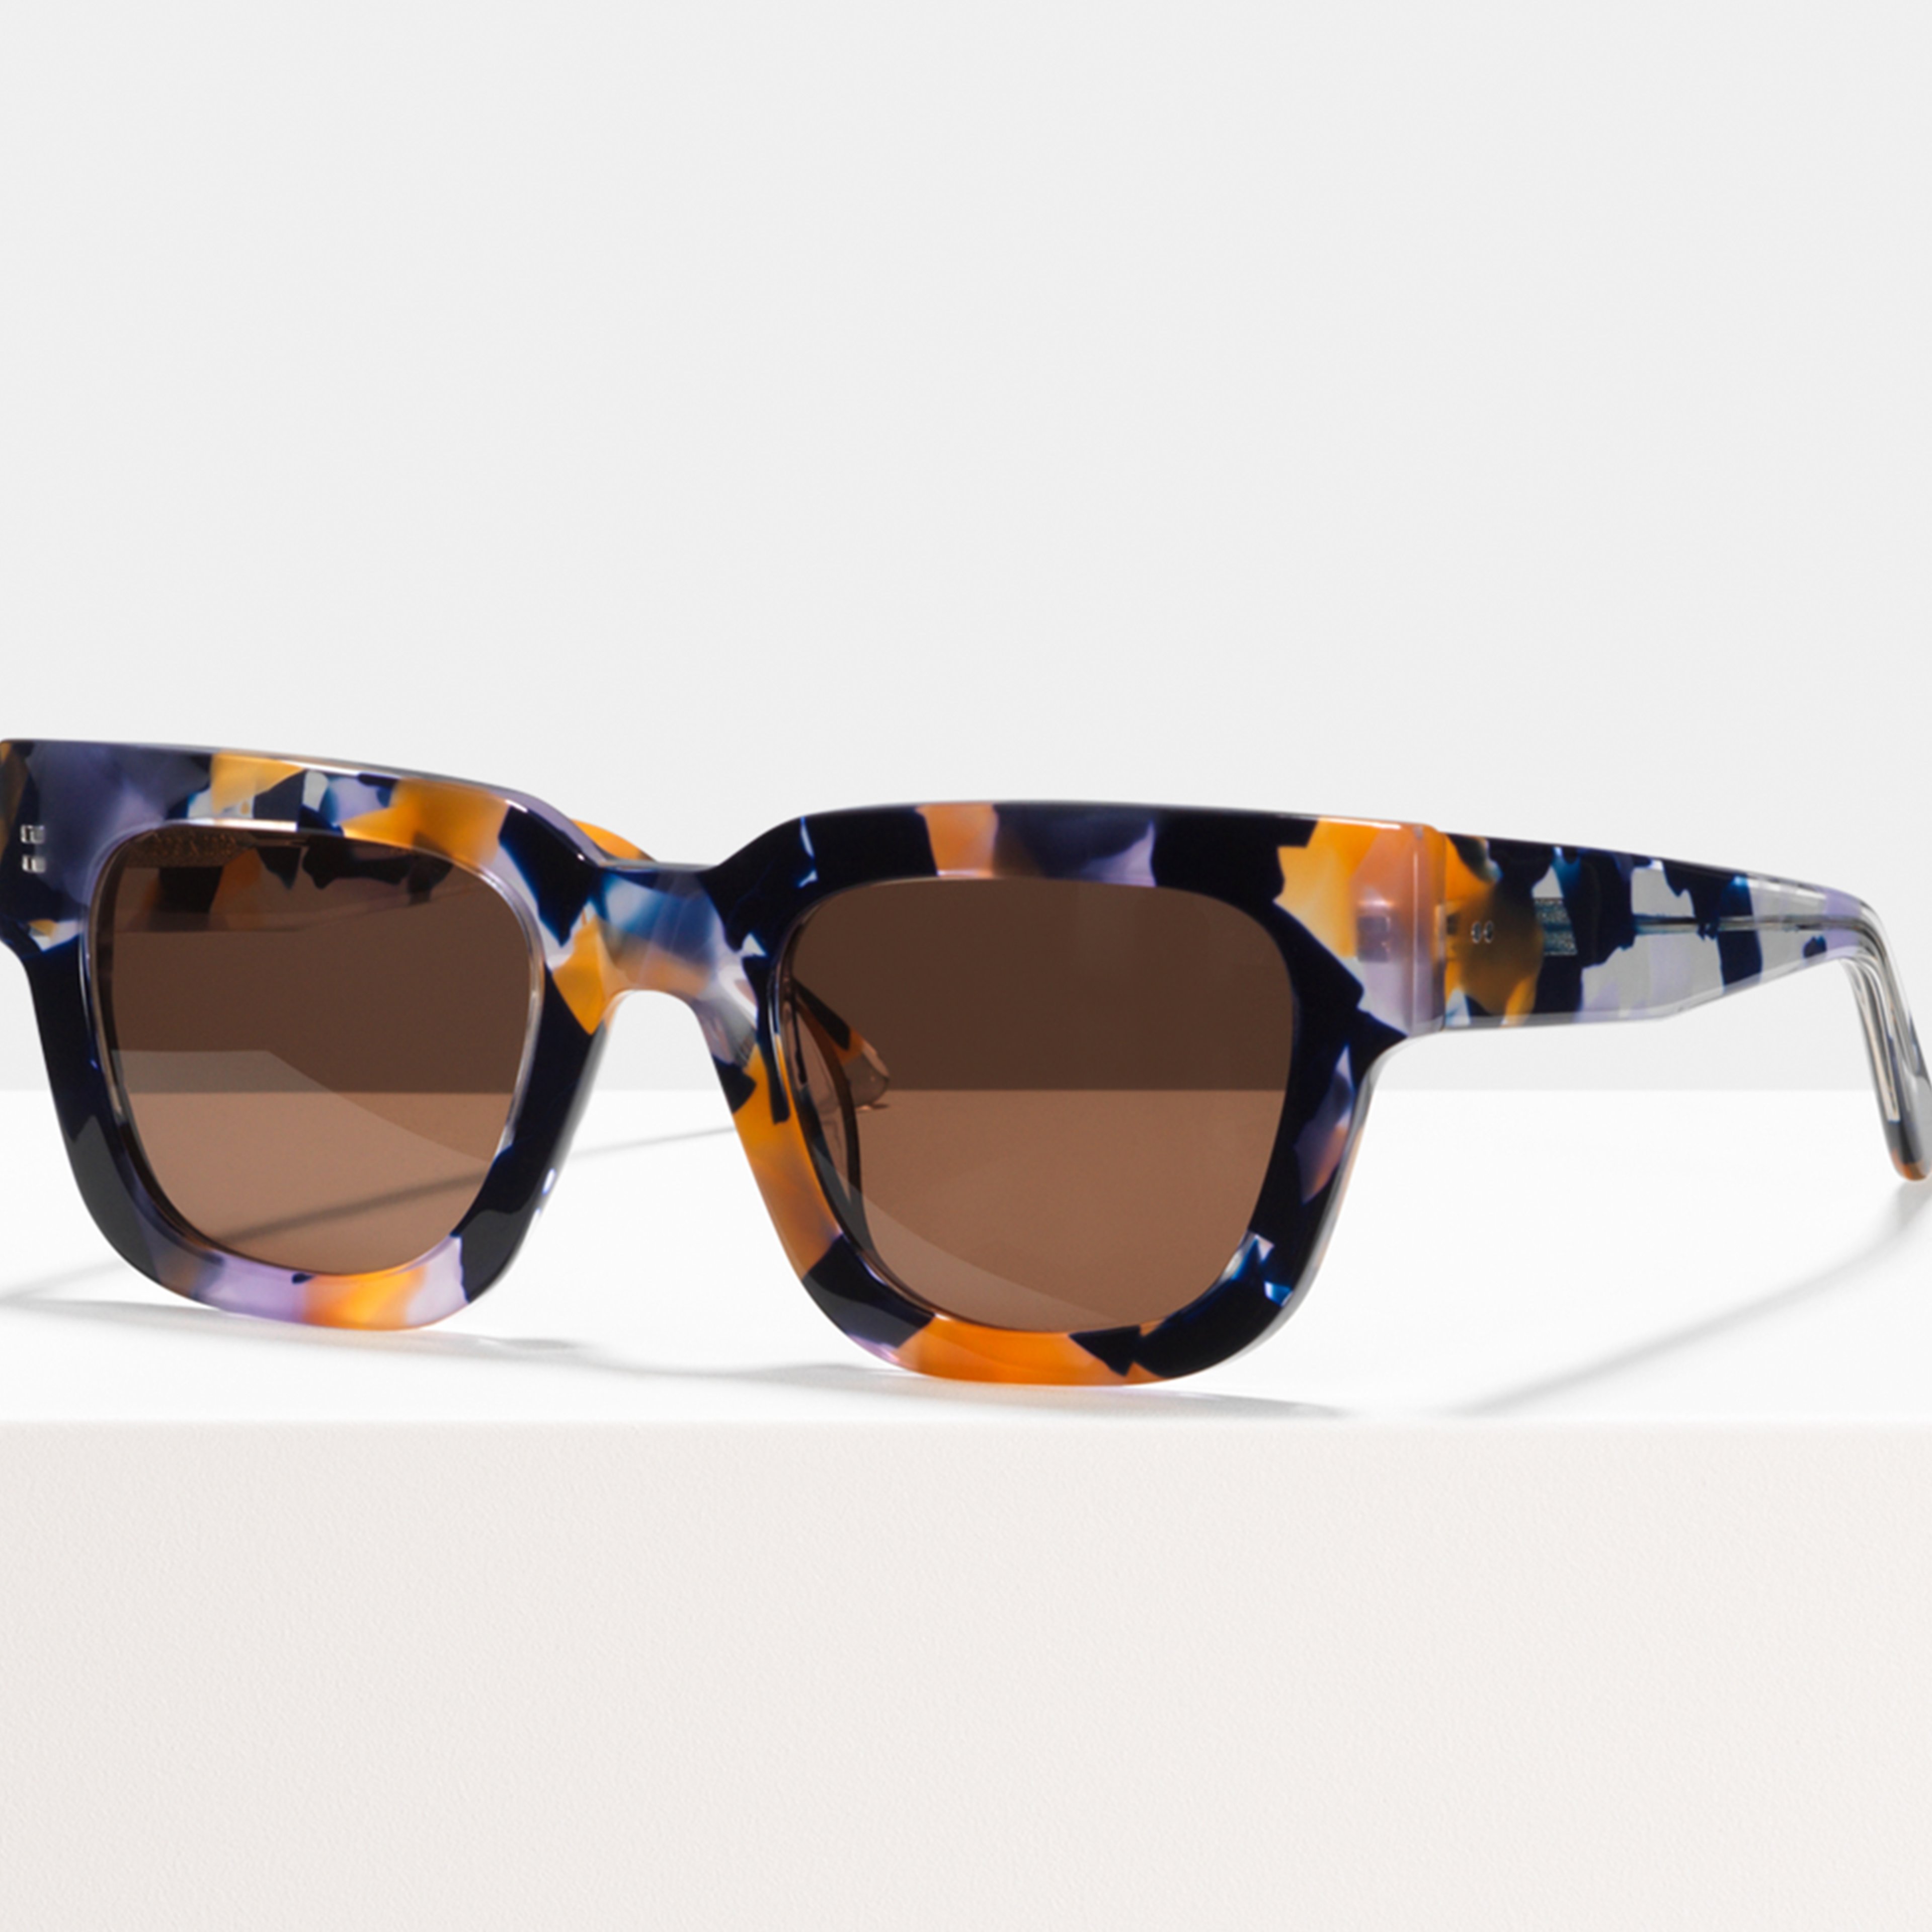 Ace & Tate Sonnenbrillen | Quadratisch Acetat in Braun, Orange, Violett